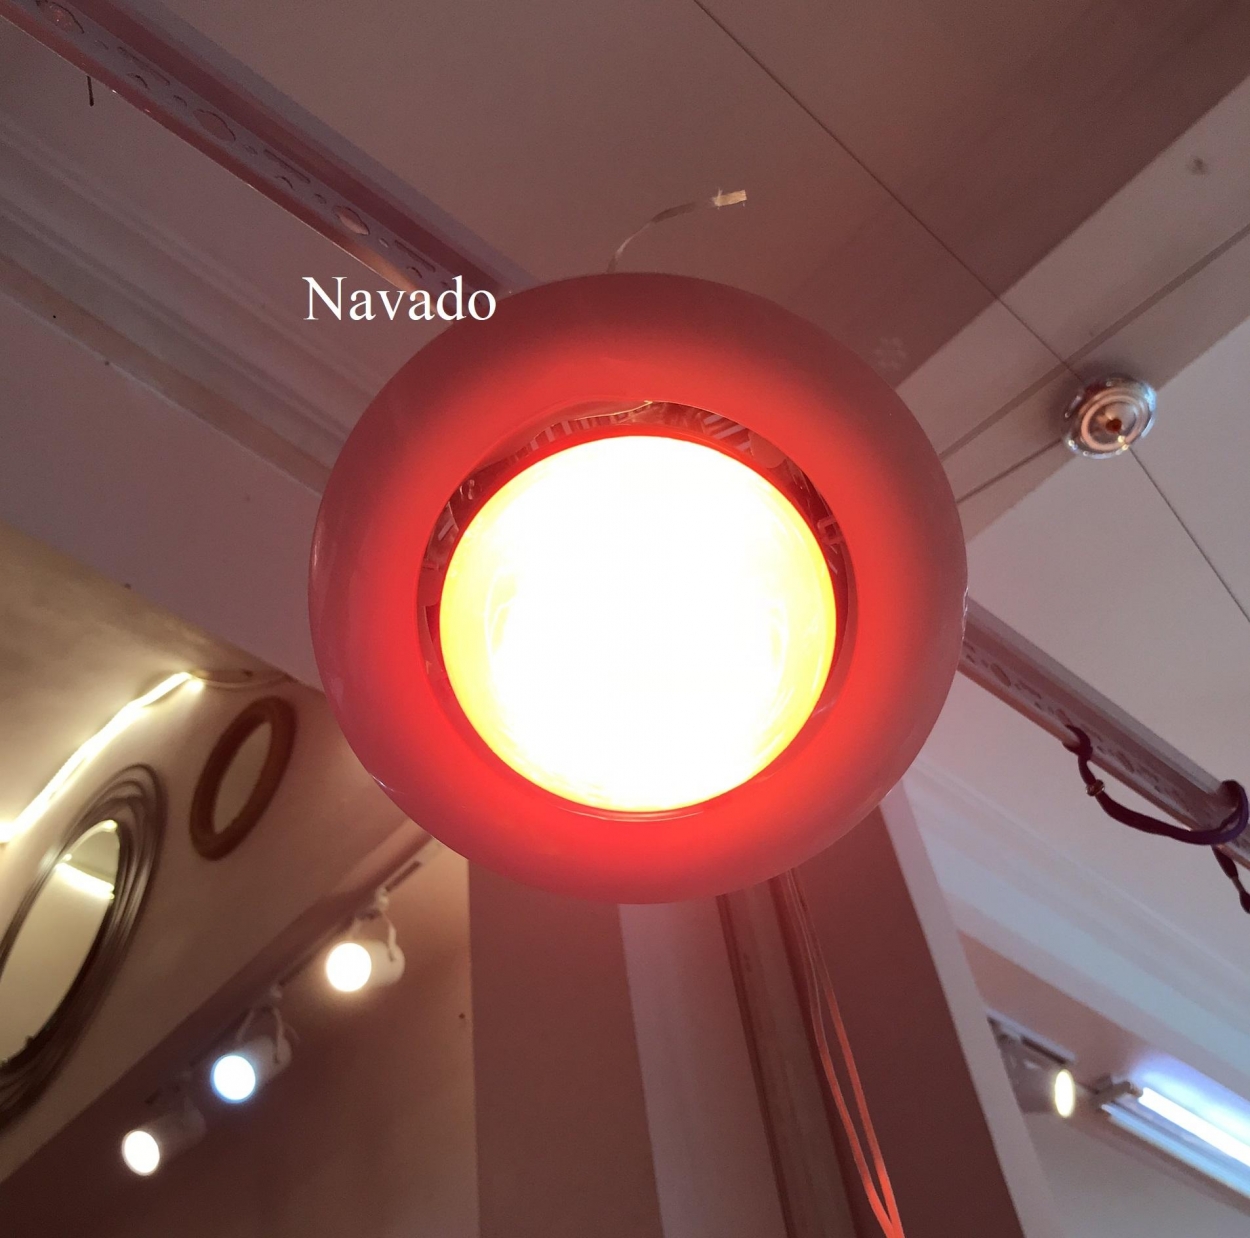 Đèn sưởi âm trần 2 bóng nhà tắm Navado được làm từ vật liệu chất lượng cao như nhựa PC thủy tinh chống cháy.